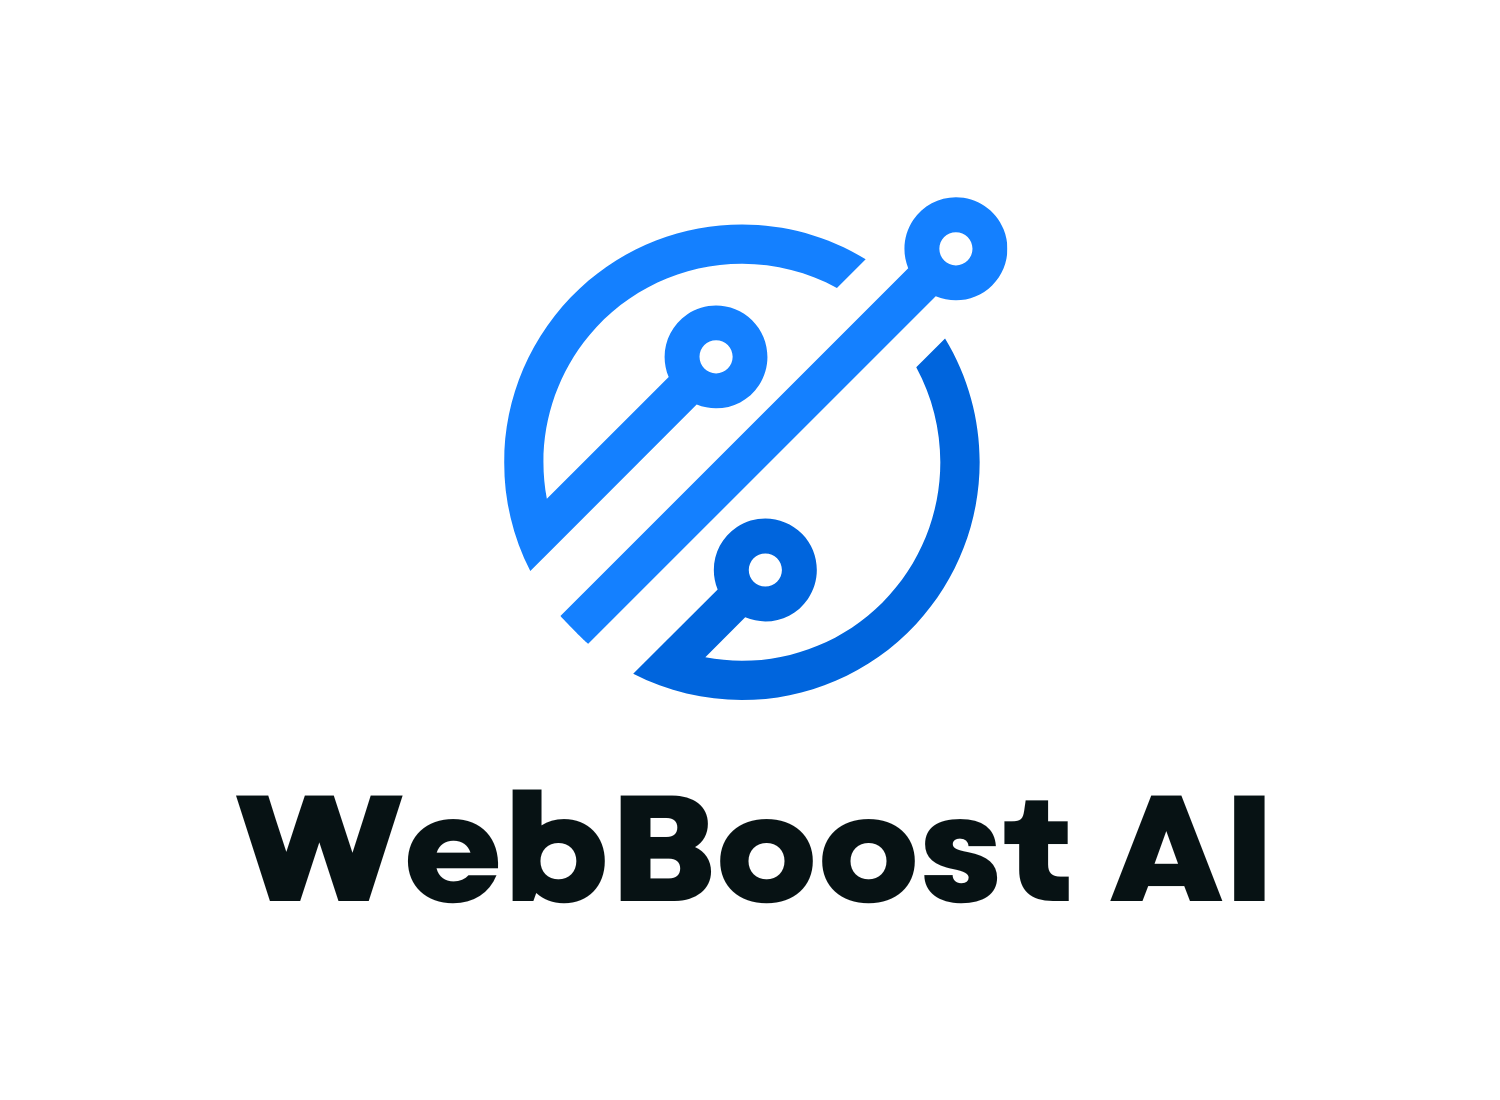 WebBoost AI - A Digital Marketing Strategy